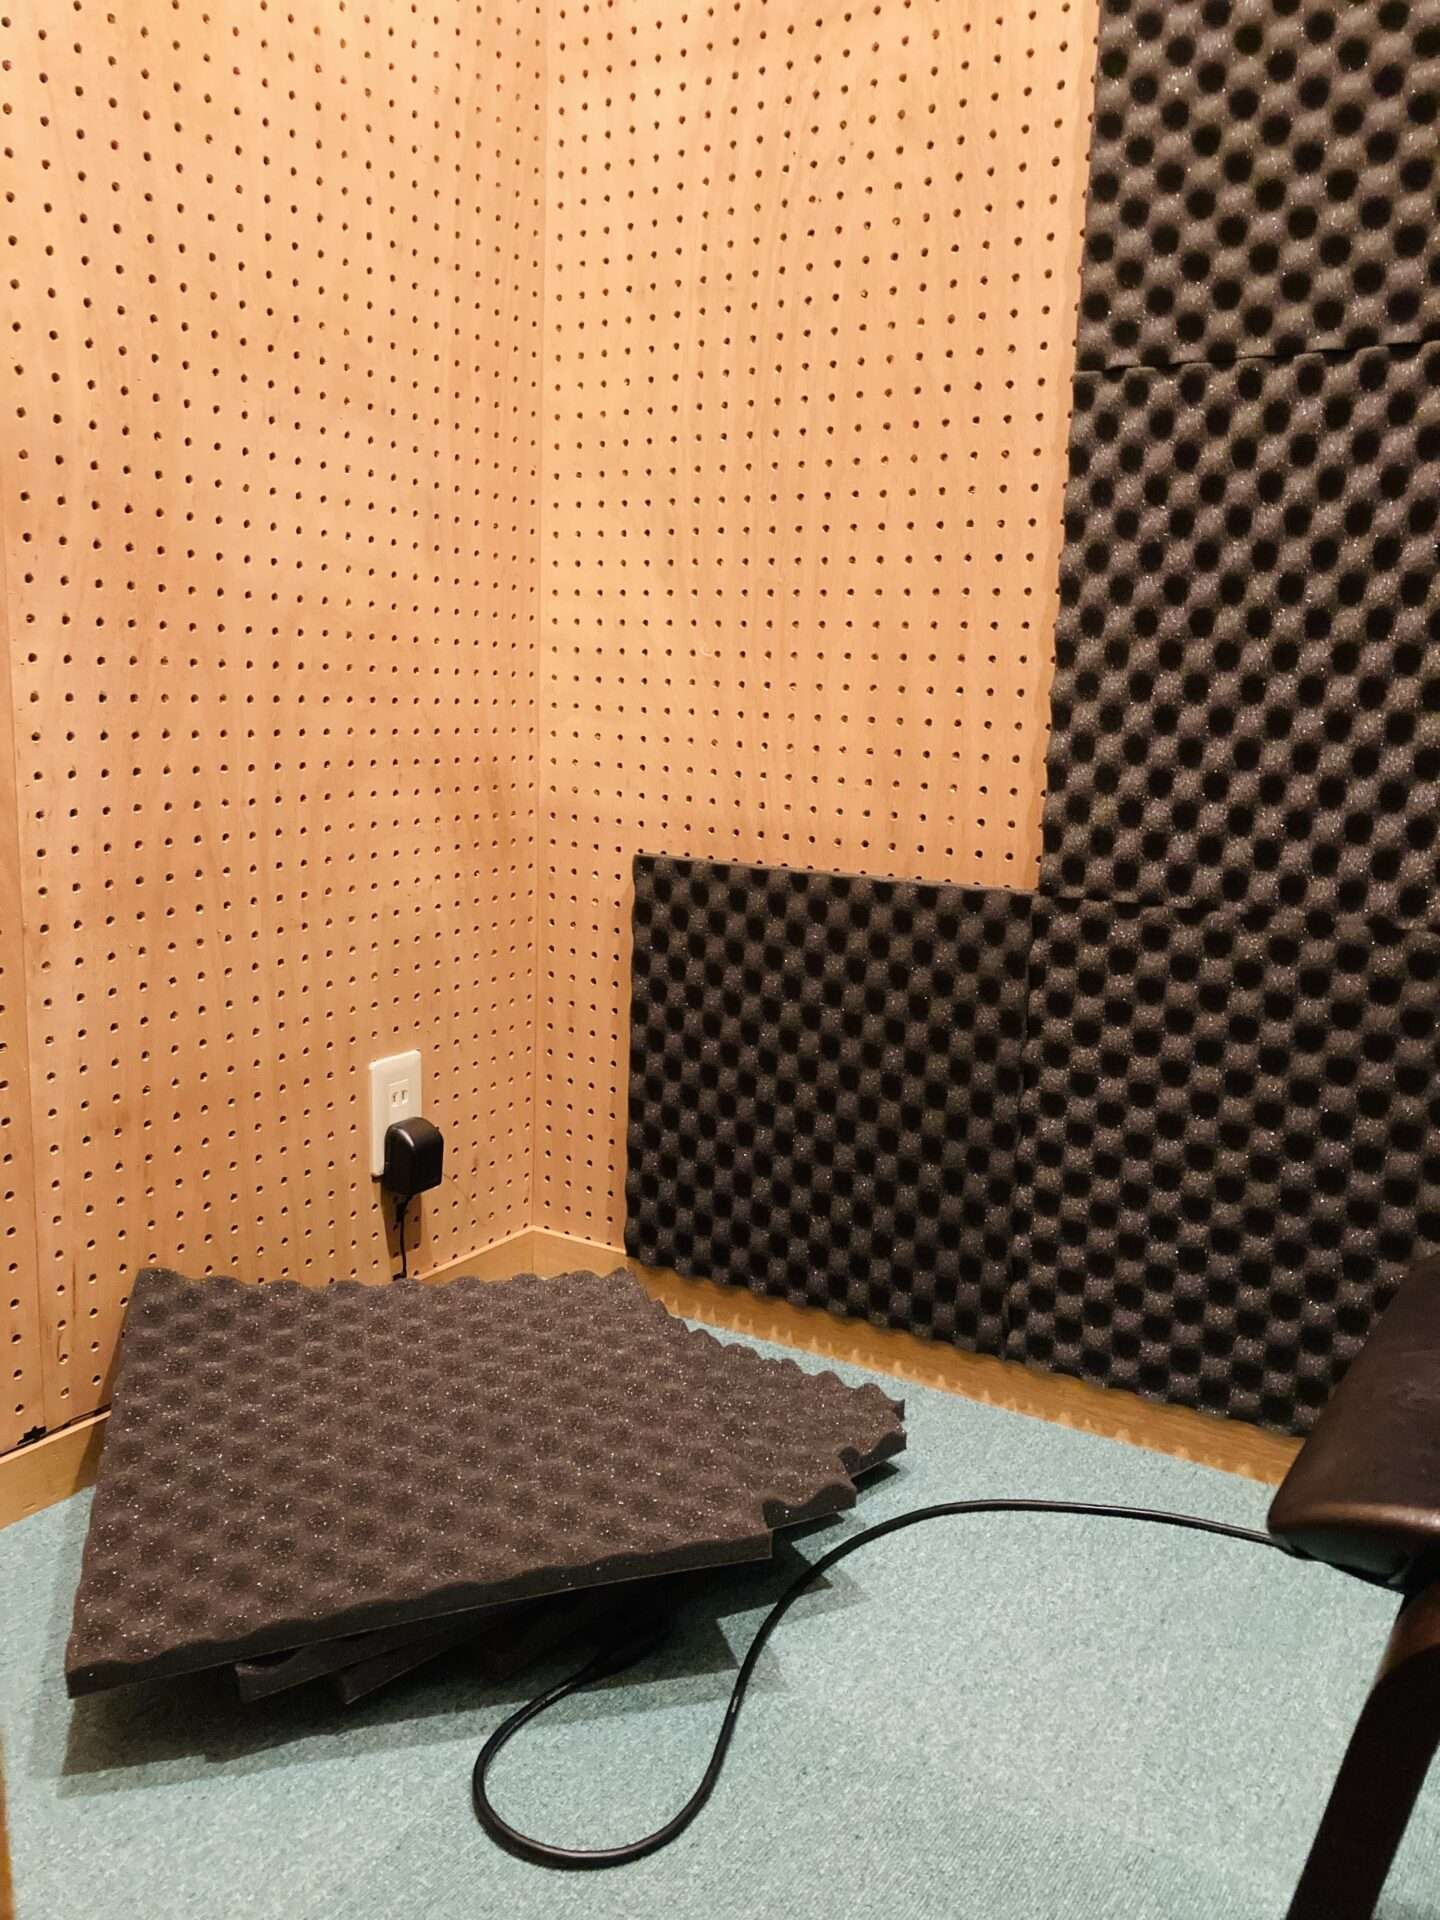 録音スタジオの録音ブース内に吸音材の設置